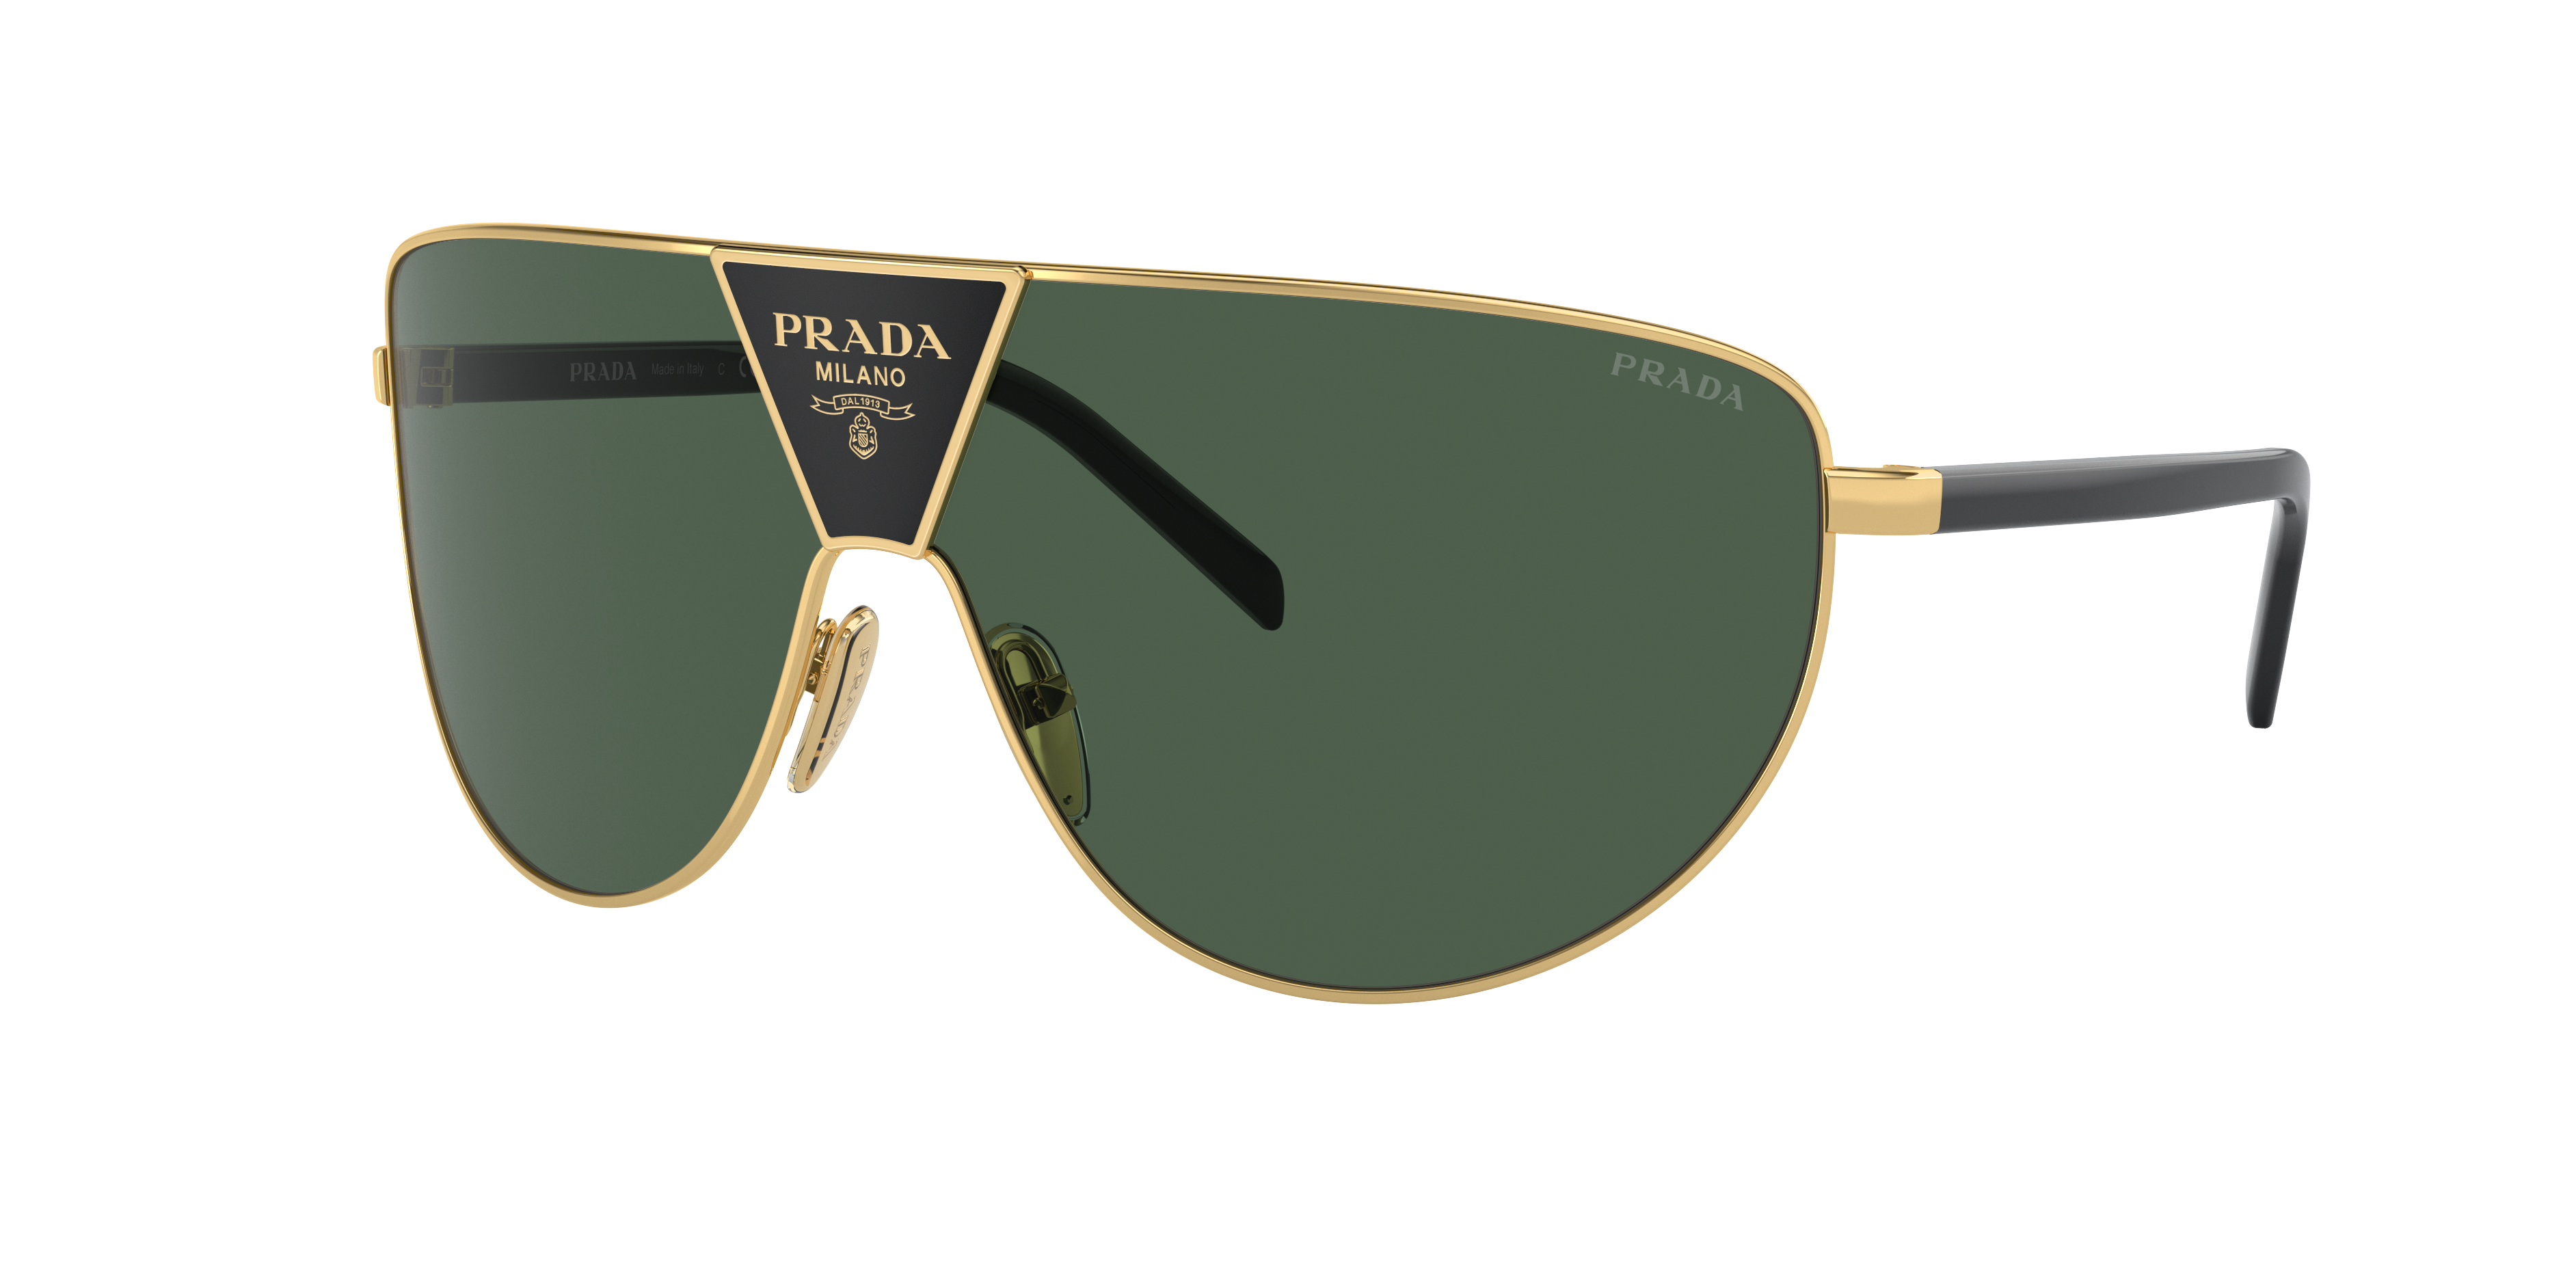 Consulte nosso catálogo de Óculos de Sol Prada Eyewear com diversos modelos e preços para sua escolha.